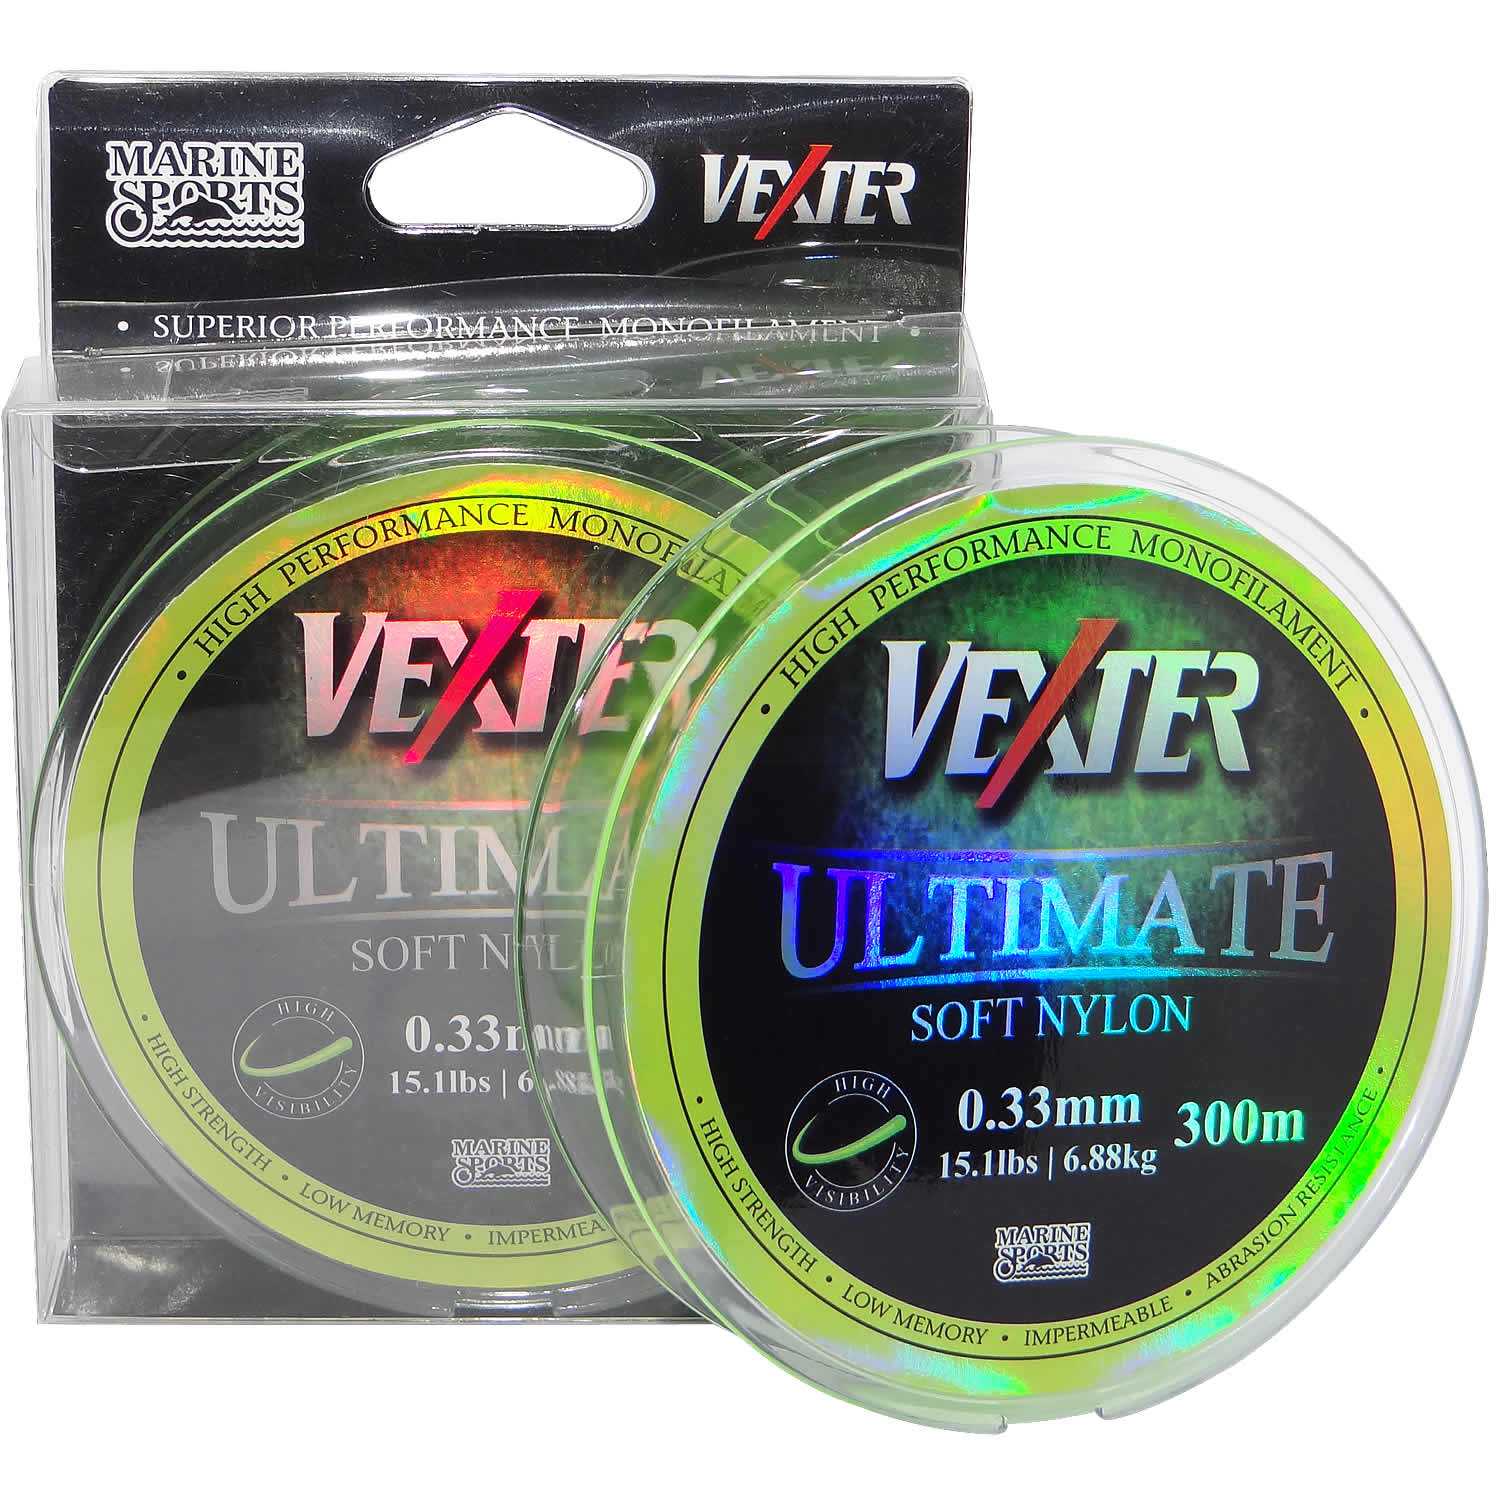 Linha Vexter Ultimate Soft Nylon Monofilamento 0,33mm 15Lbs/6,88kg - 300 Metros - Life Pesca - Sua loja de Pesca, Camping e Lazer